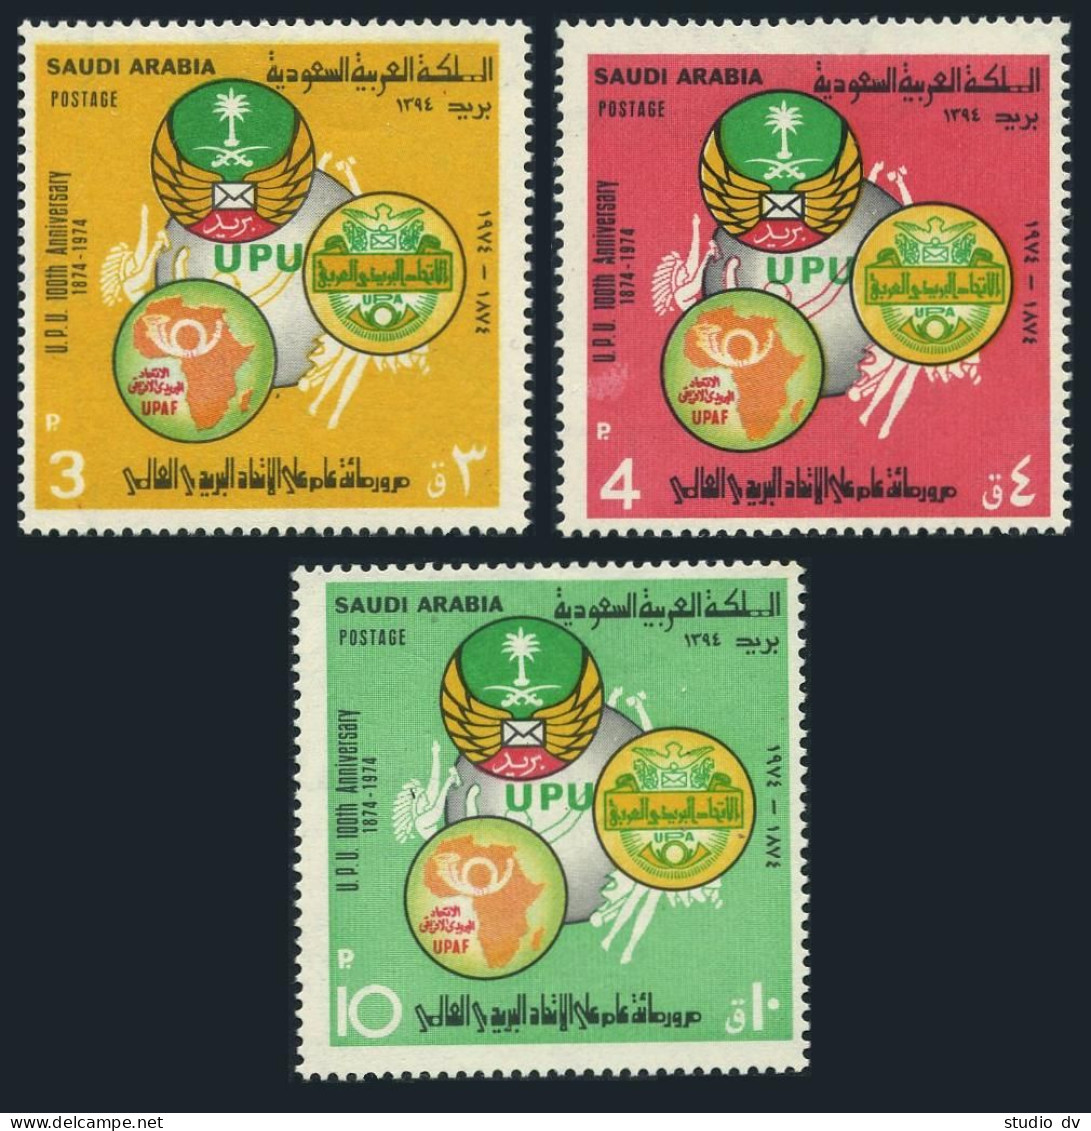 Saudi Arabia 645-647, MNH. Michel 554-556. UPU-100, 1974. Arab Postal Emblem. - Saoedi-Arabië